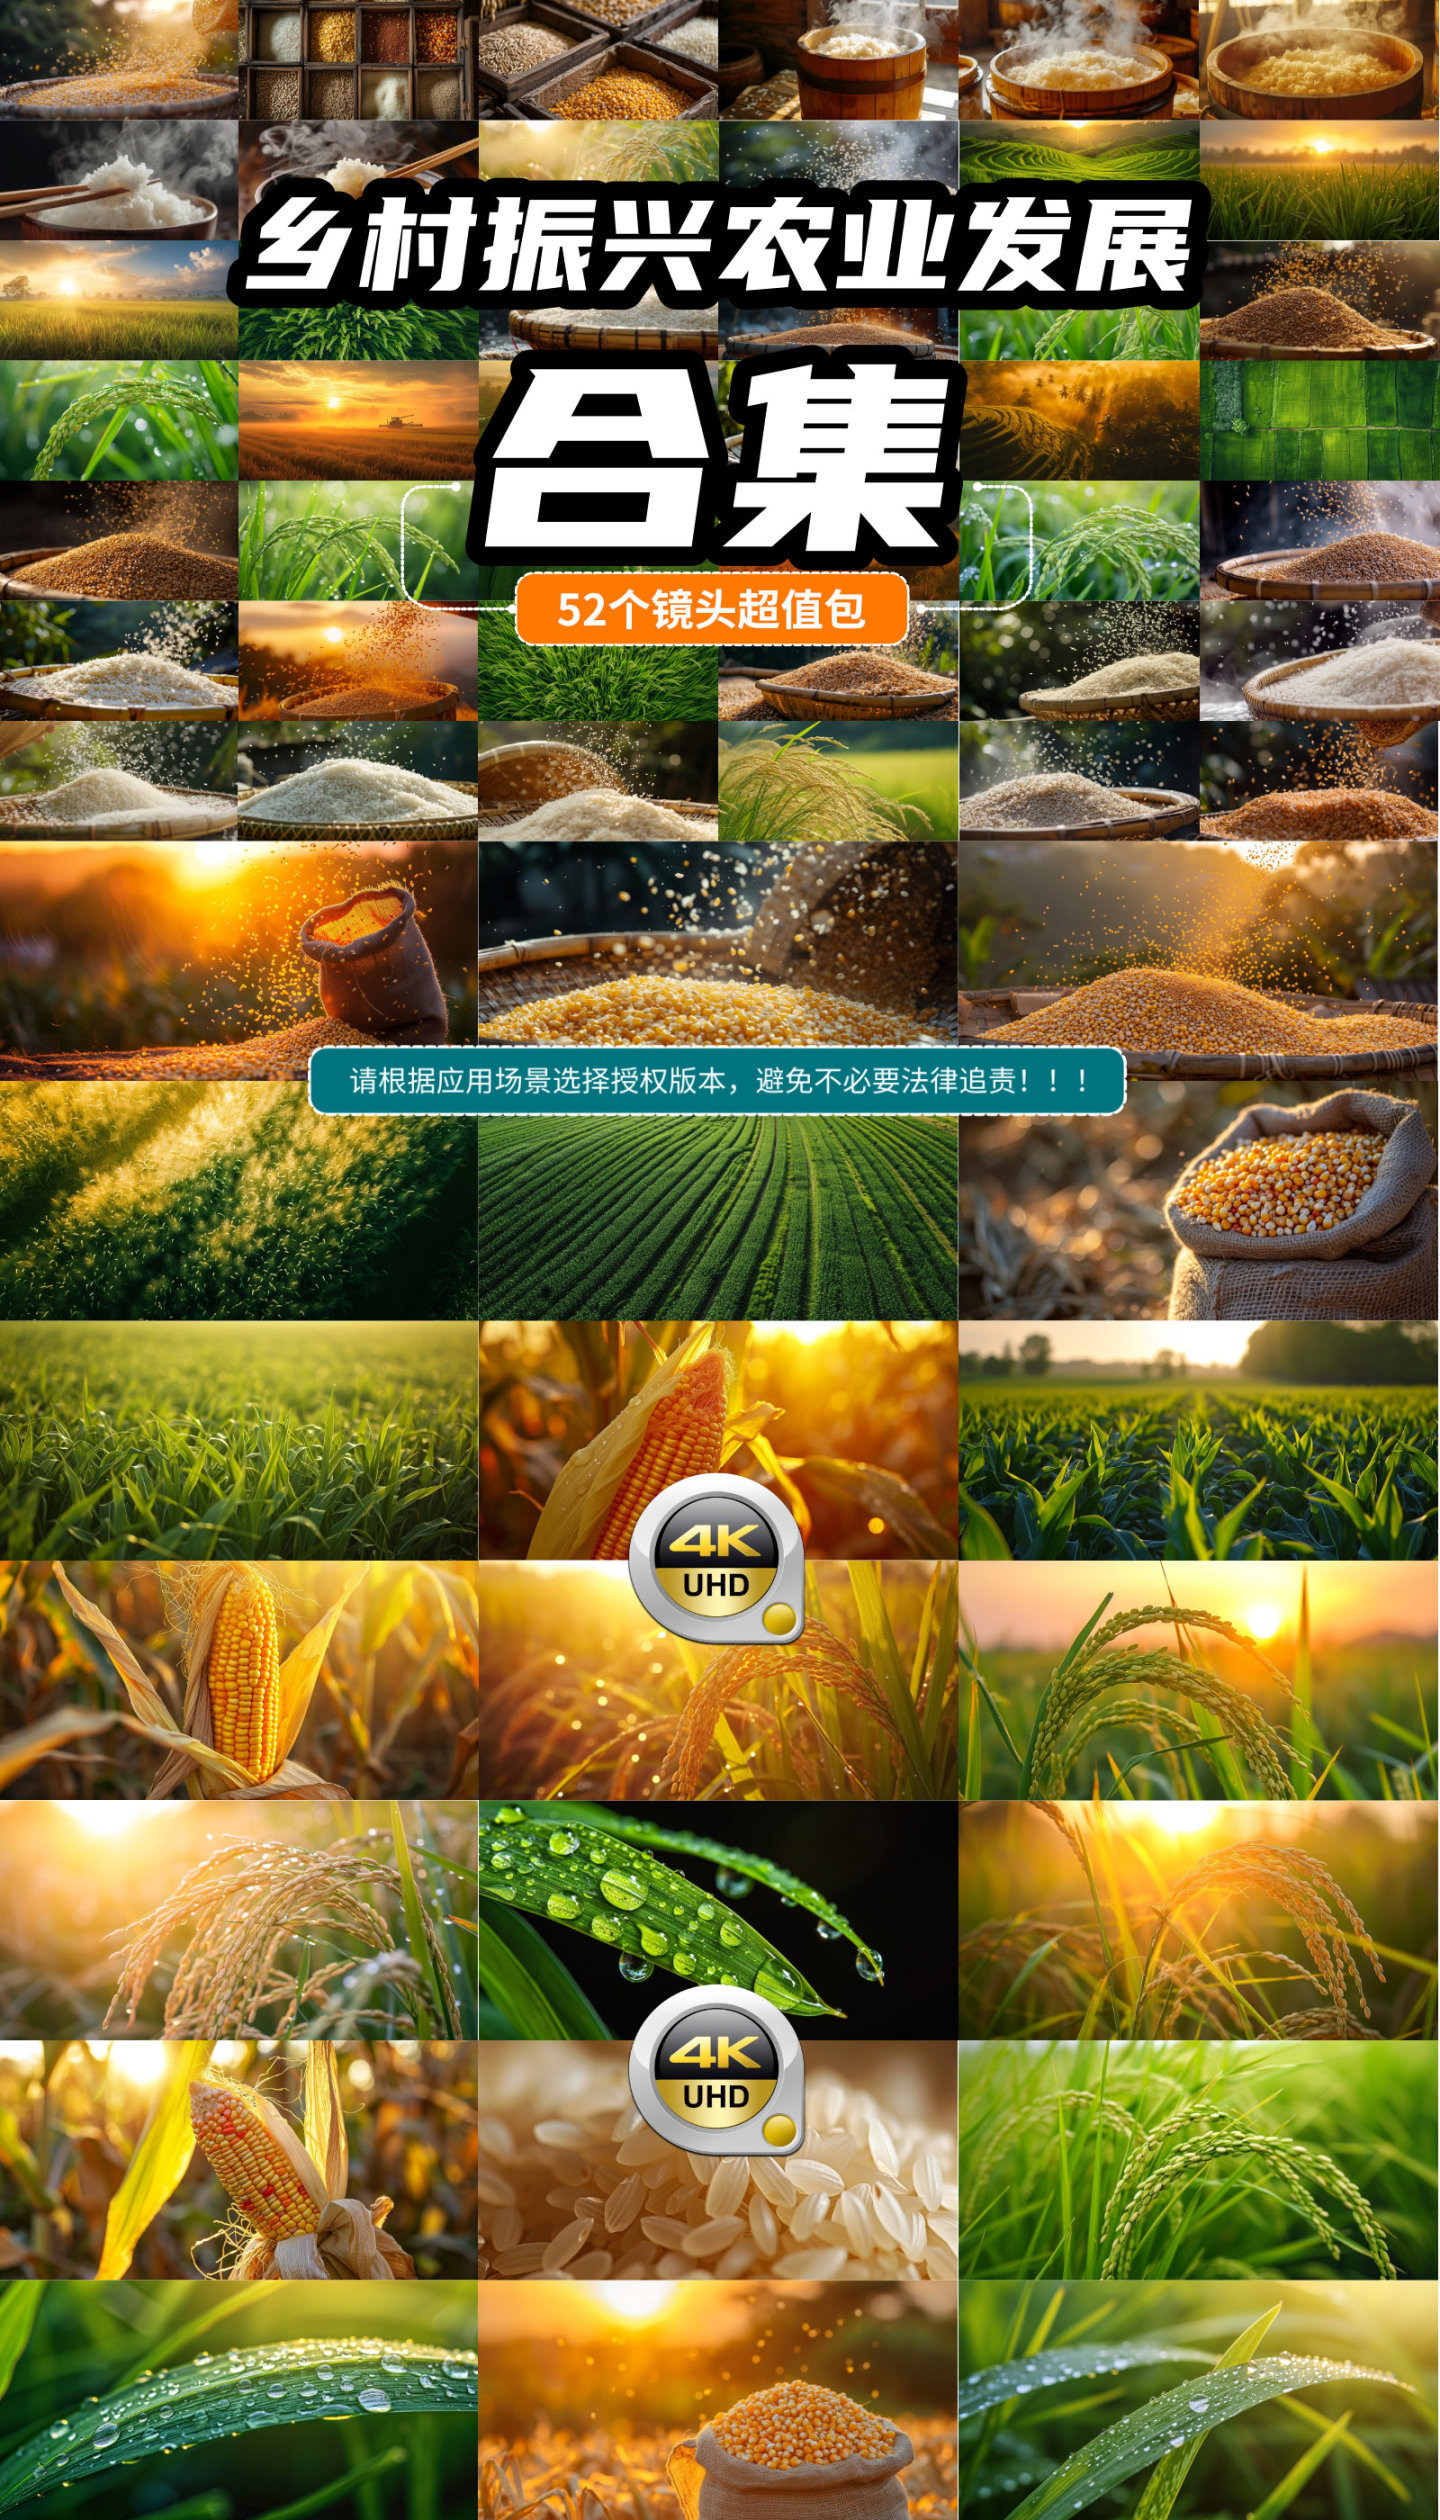 中国宣传片 乡村振兴 美丽乡村 农业丰收